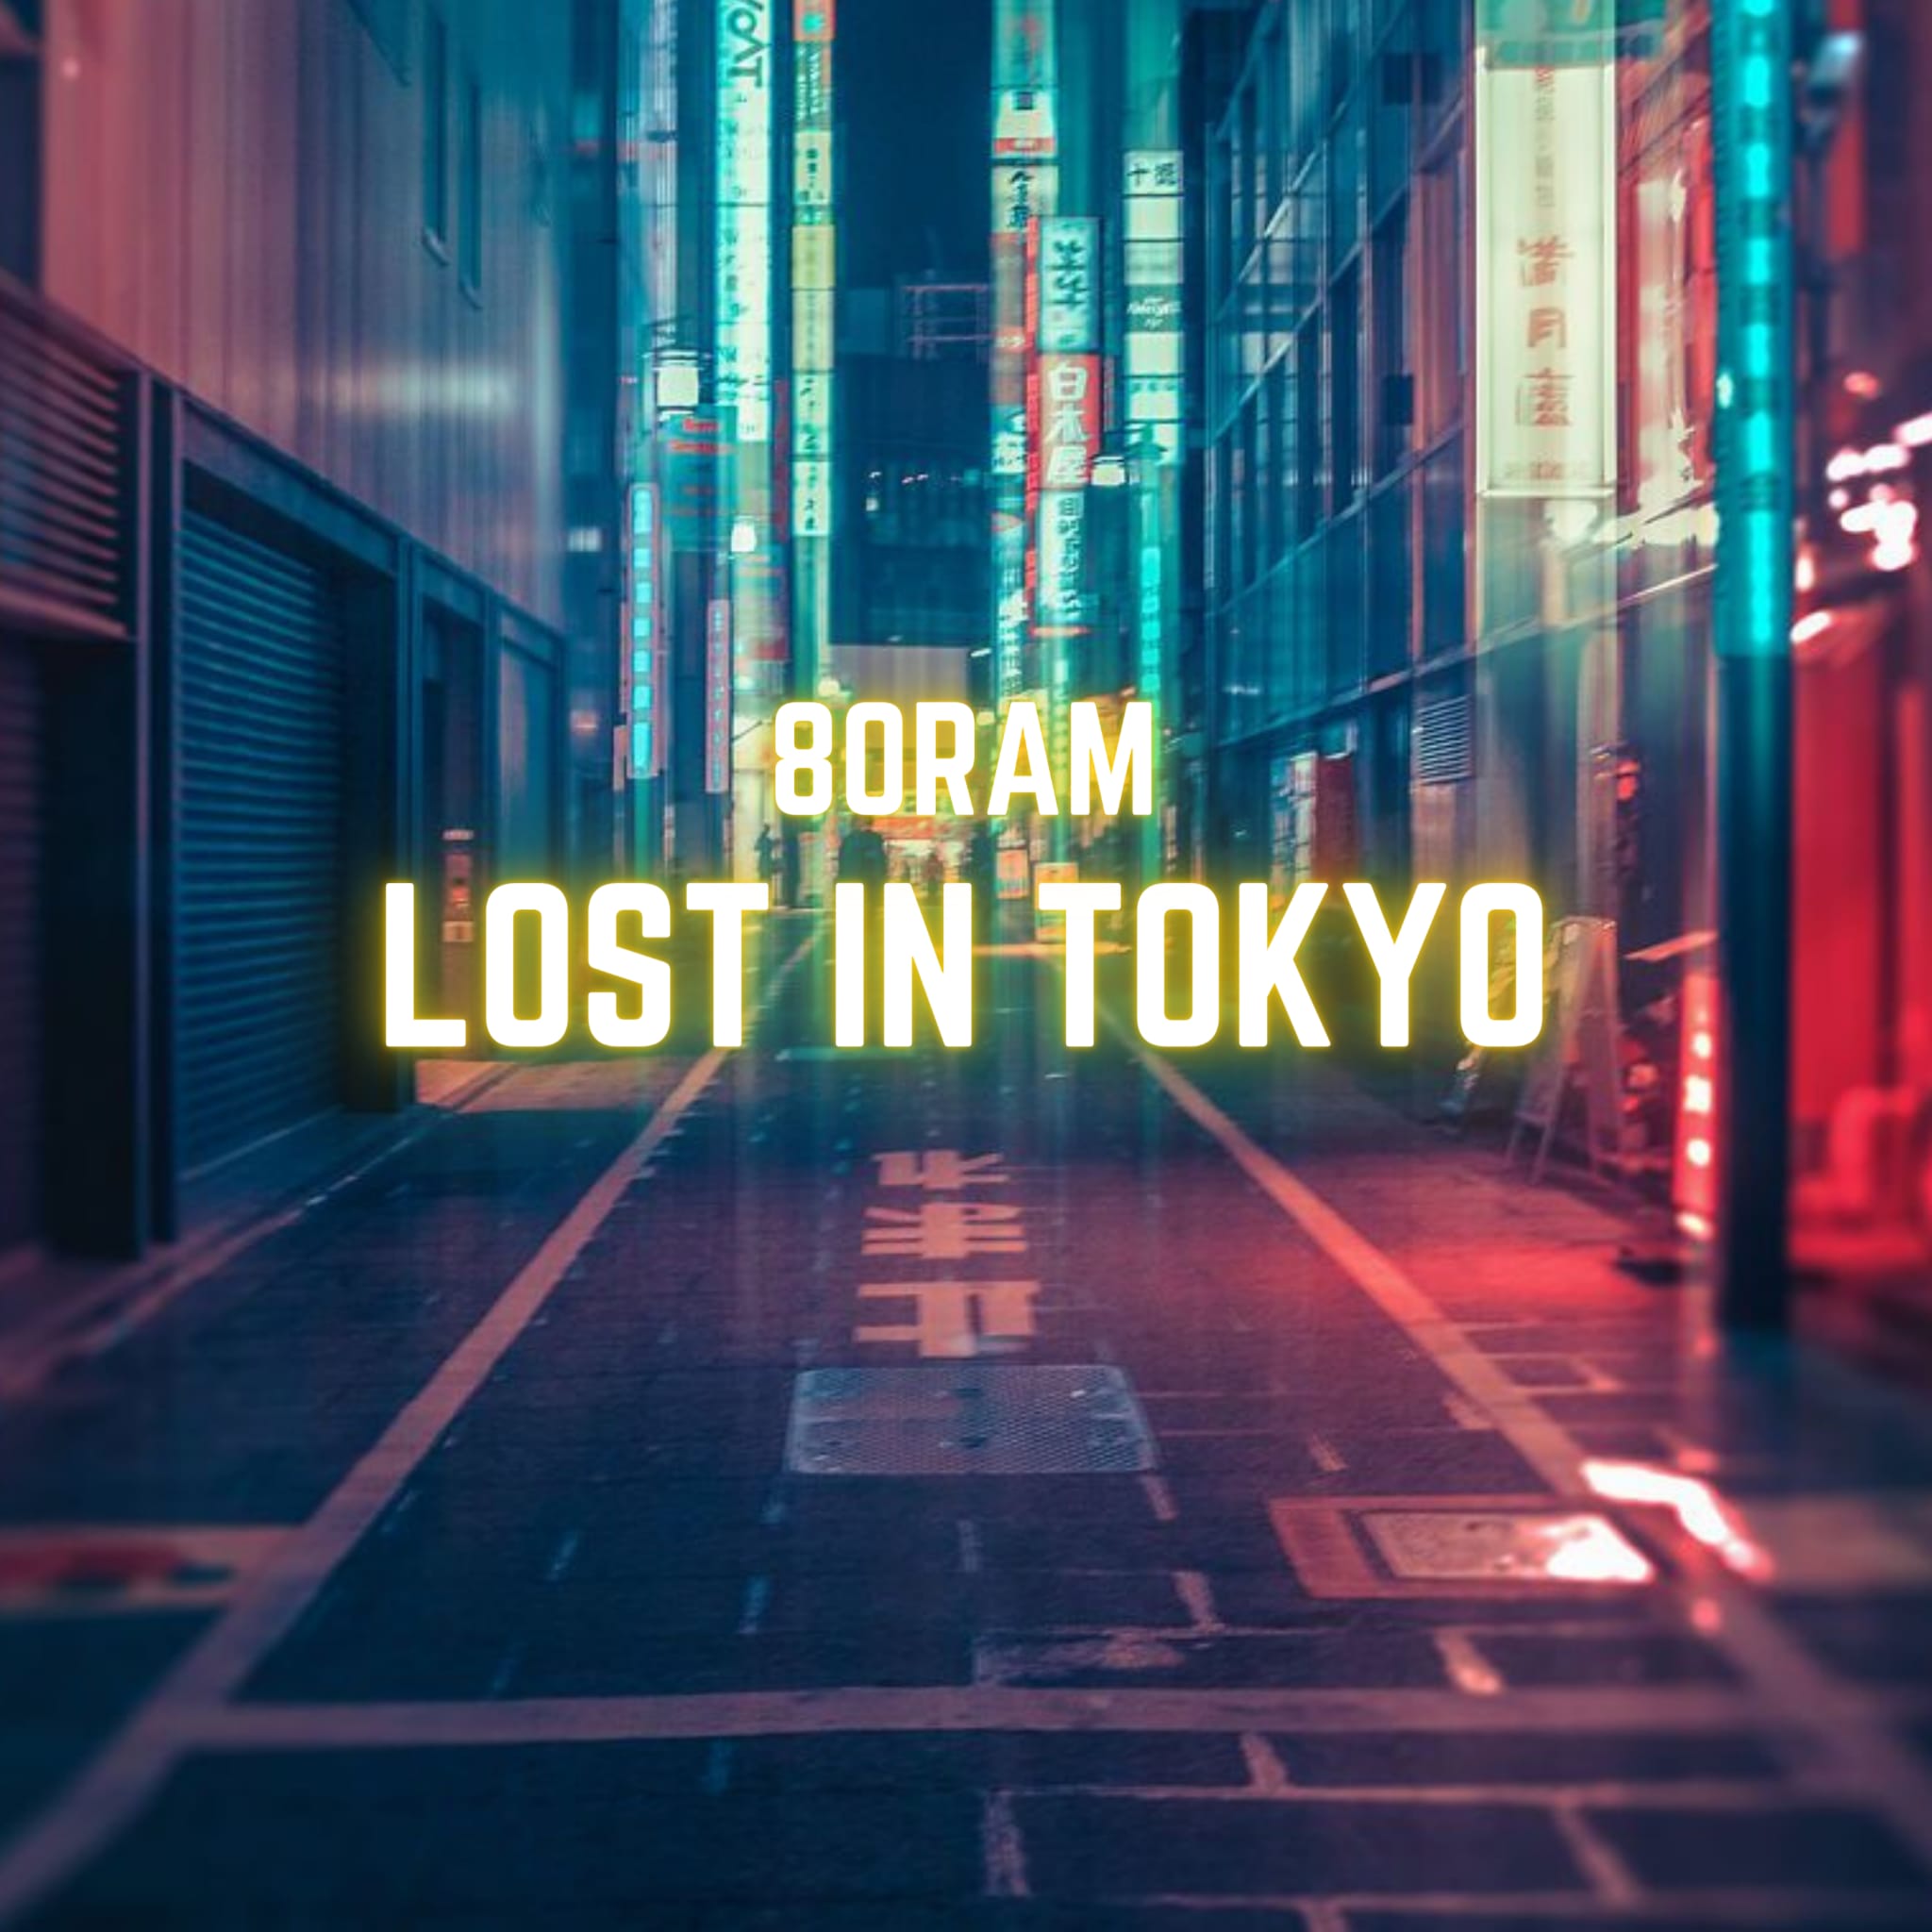 80RAM: esce il nuovo singolo “LOST IN TOKYO”